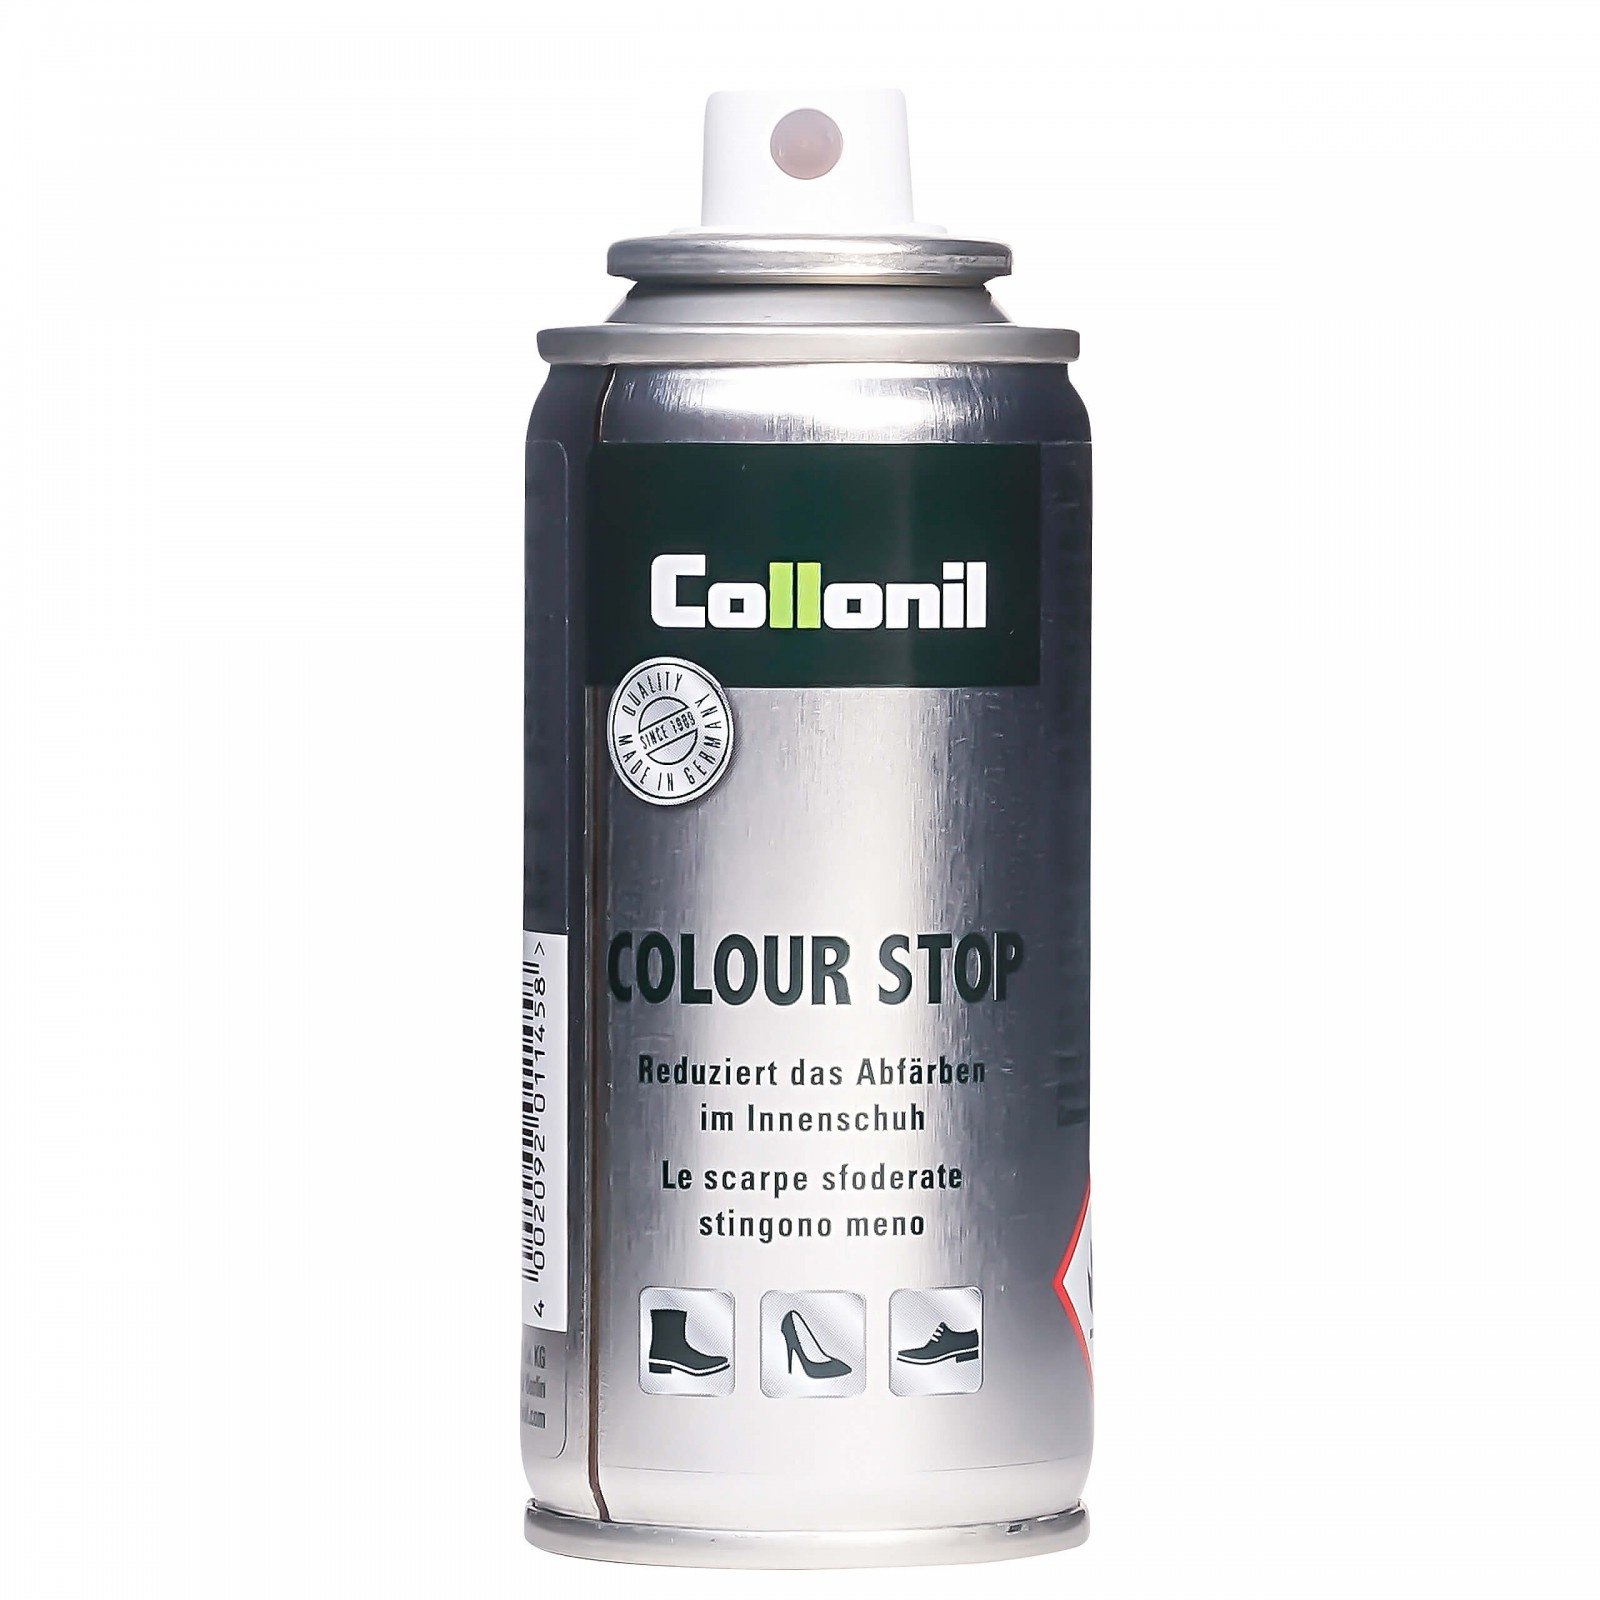 COLLONIL Collonil Colour Stop - tegen afgeven